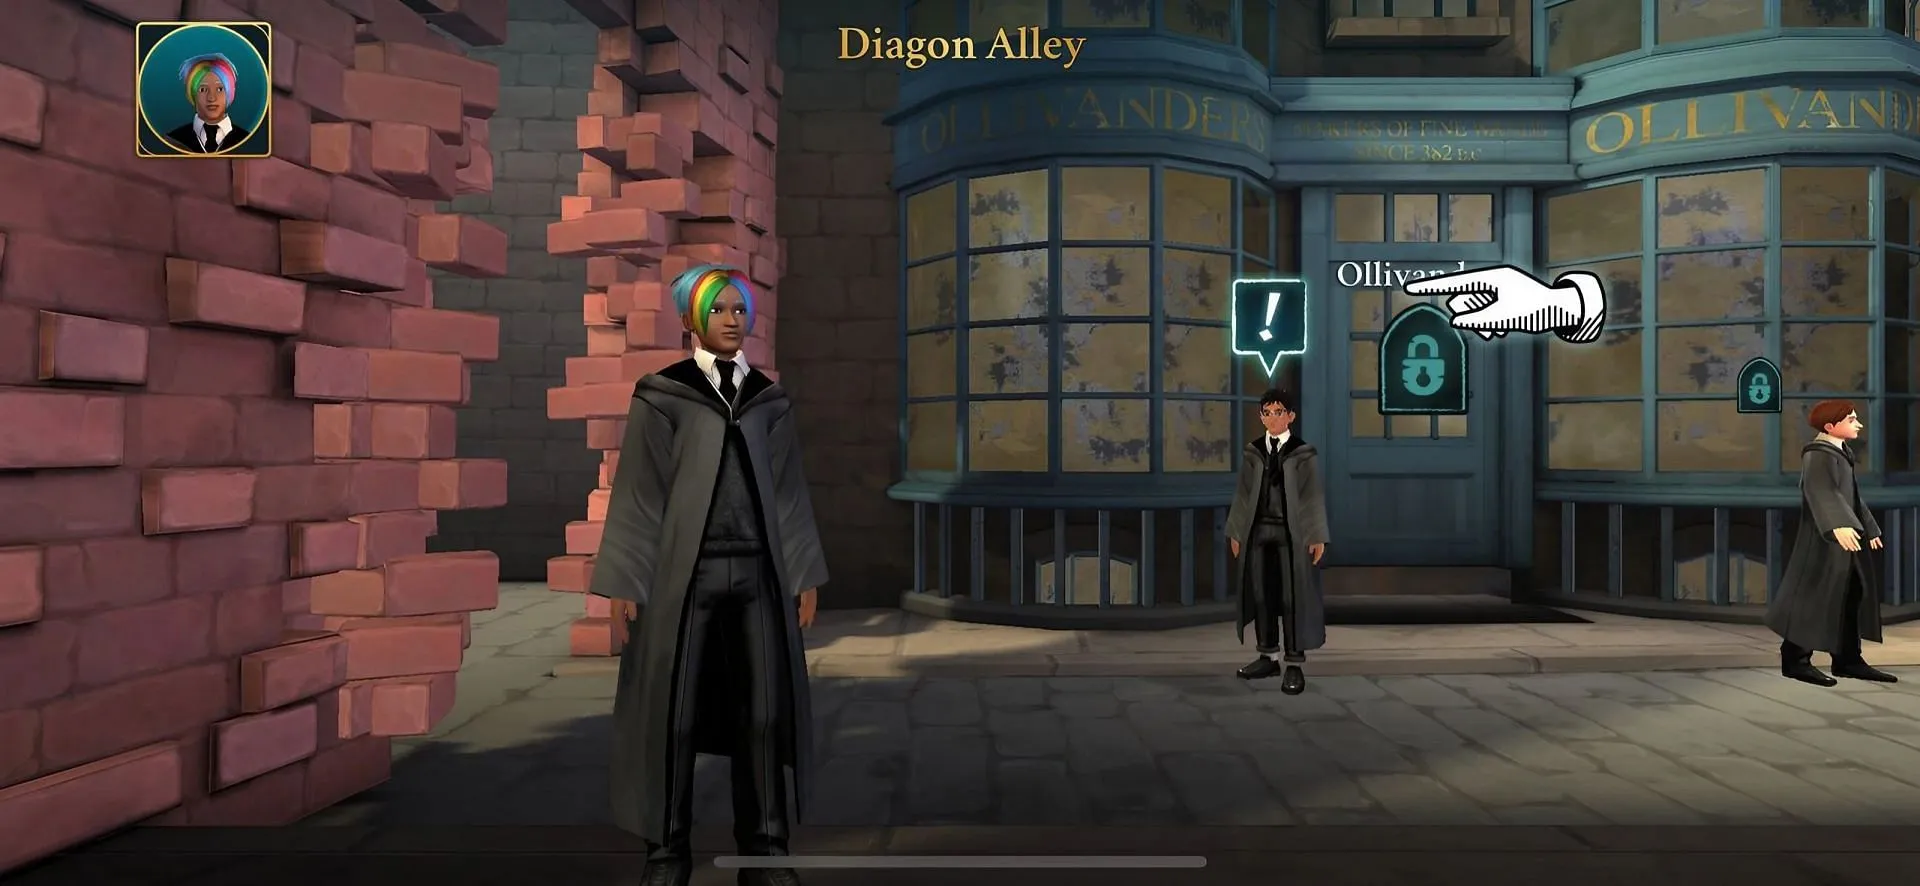 Meeting up at Diagon Alley (Image via WB Games)